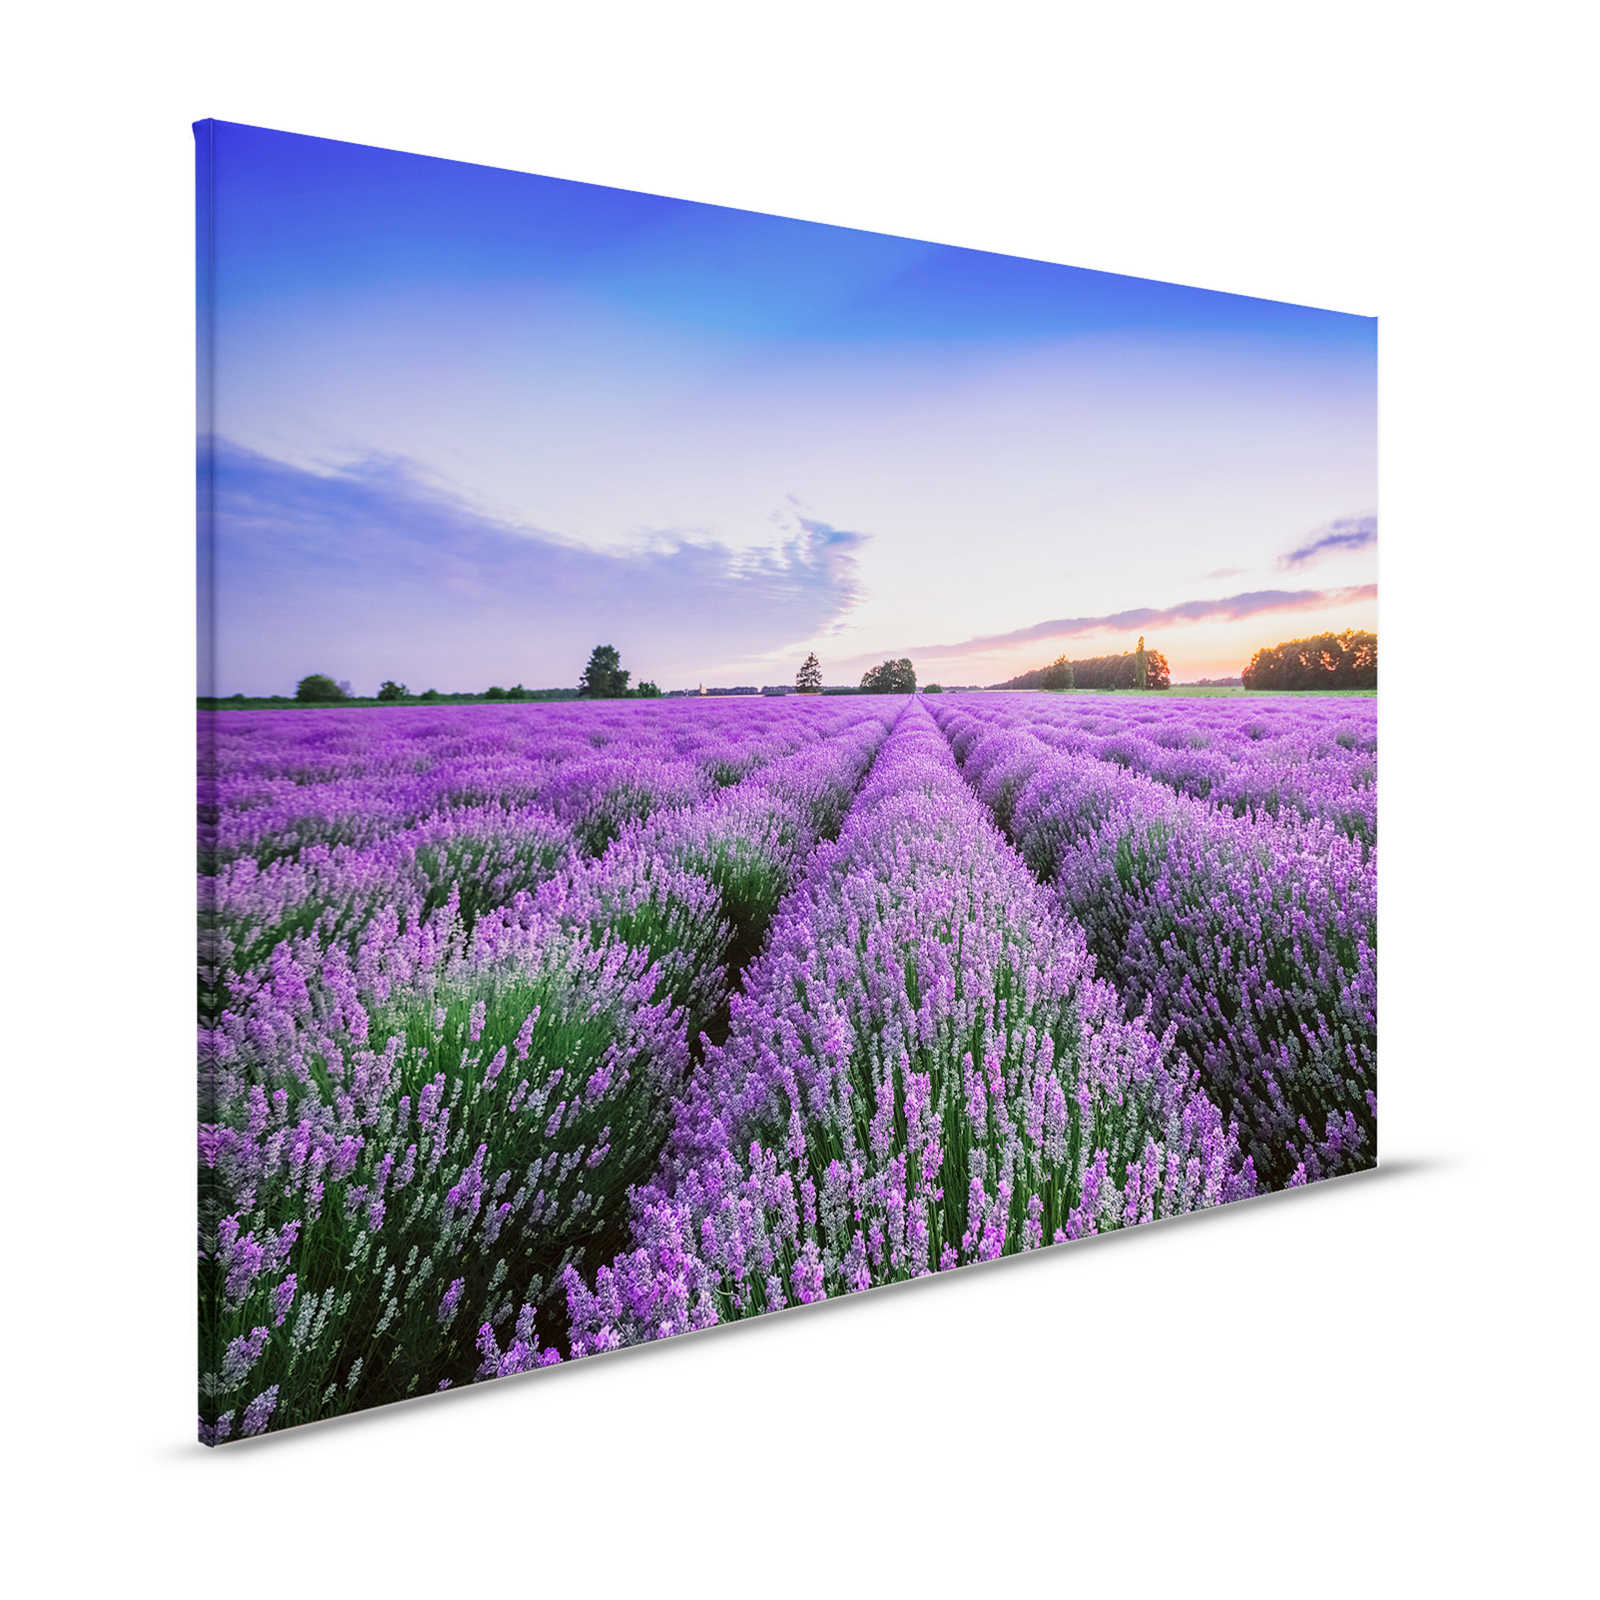         Landschaft Leinwandbild mit Lavendelfeld – 1,20 m x 0,80 m
    